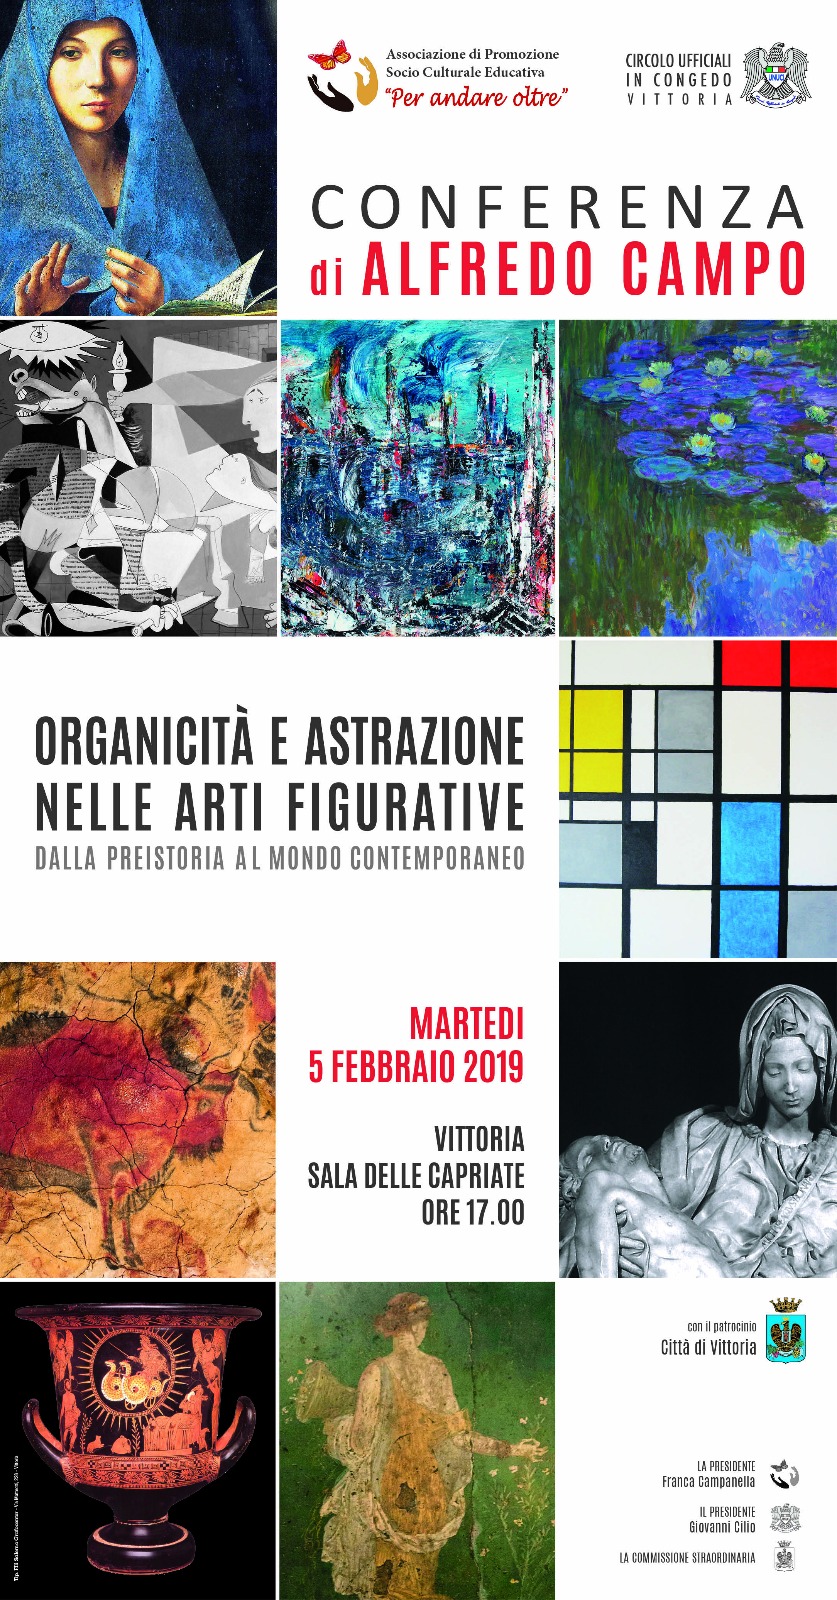 5 Febbraio: Organicità e astrazione nelle arti figurative. Conferenza di Alfredo Campo